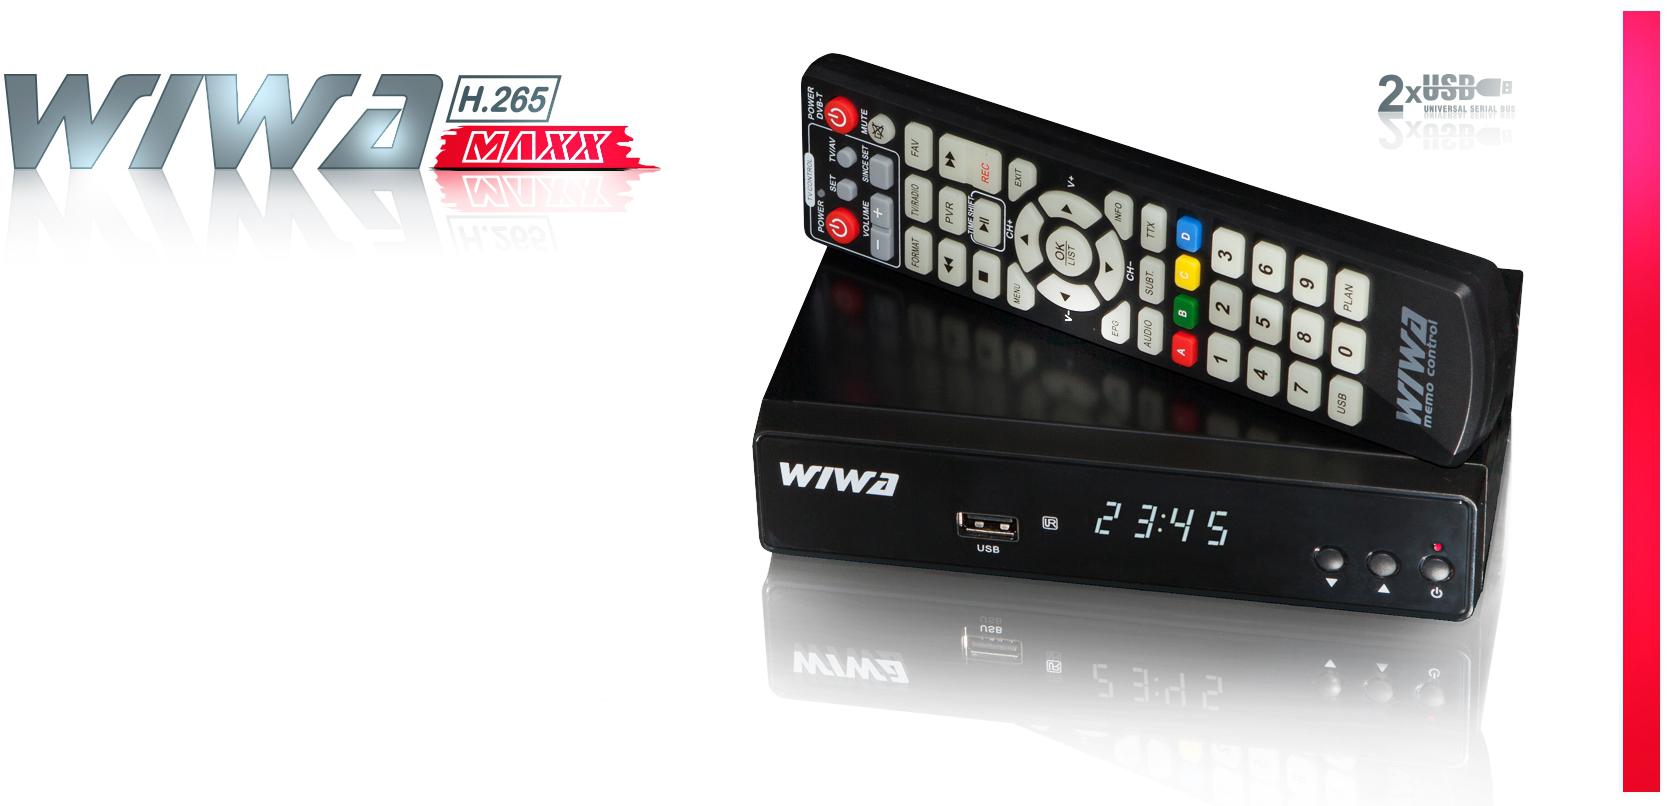 Najważniejsze cechy tunera DVB-T/T2 drugiej generacji WIWA H.265 MAXX